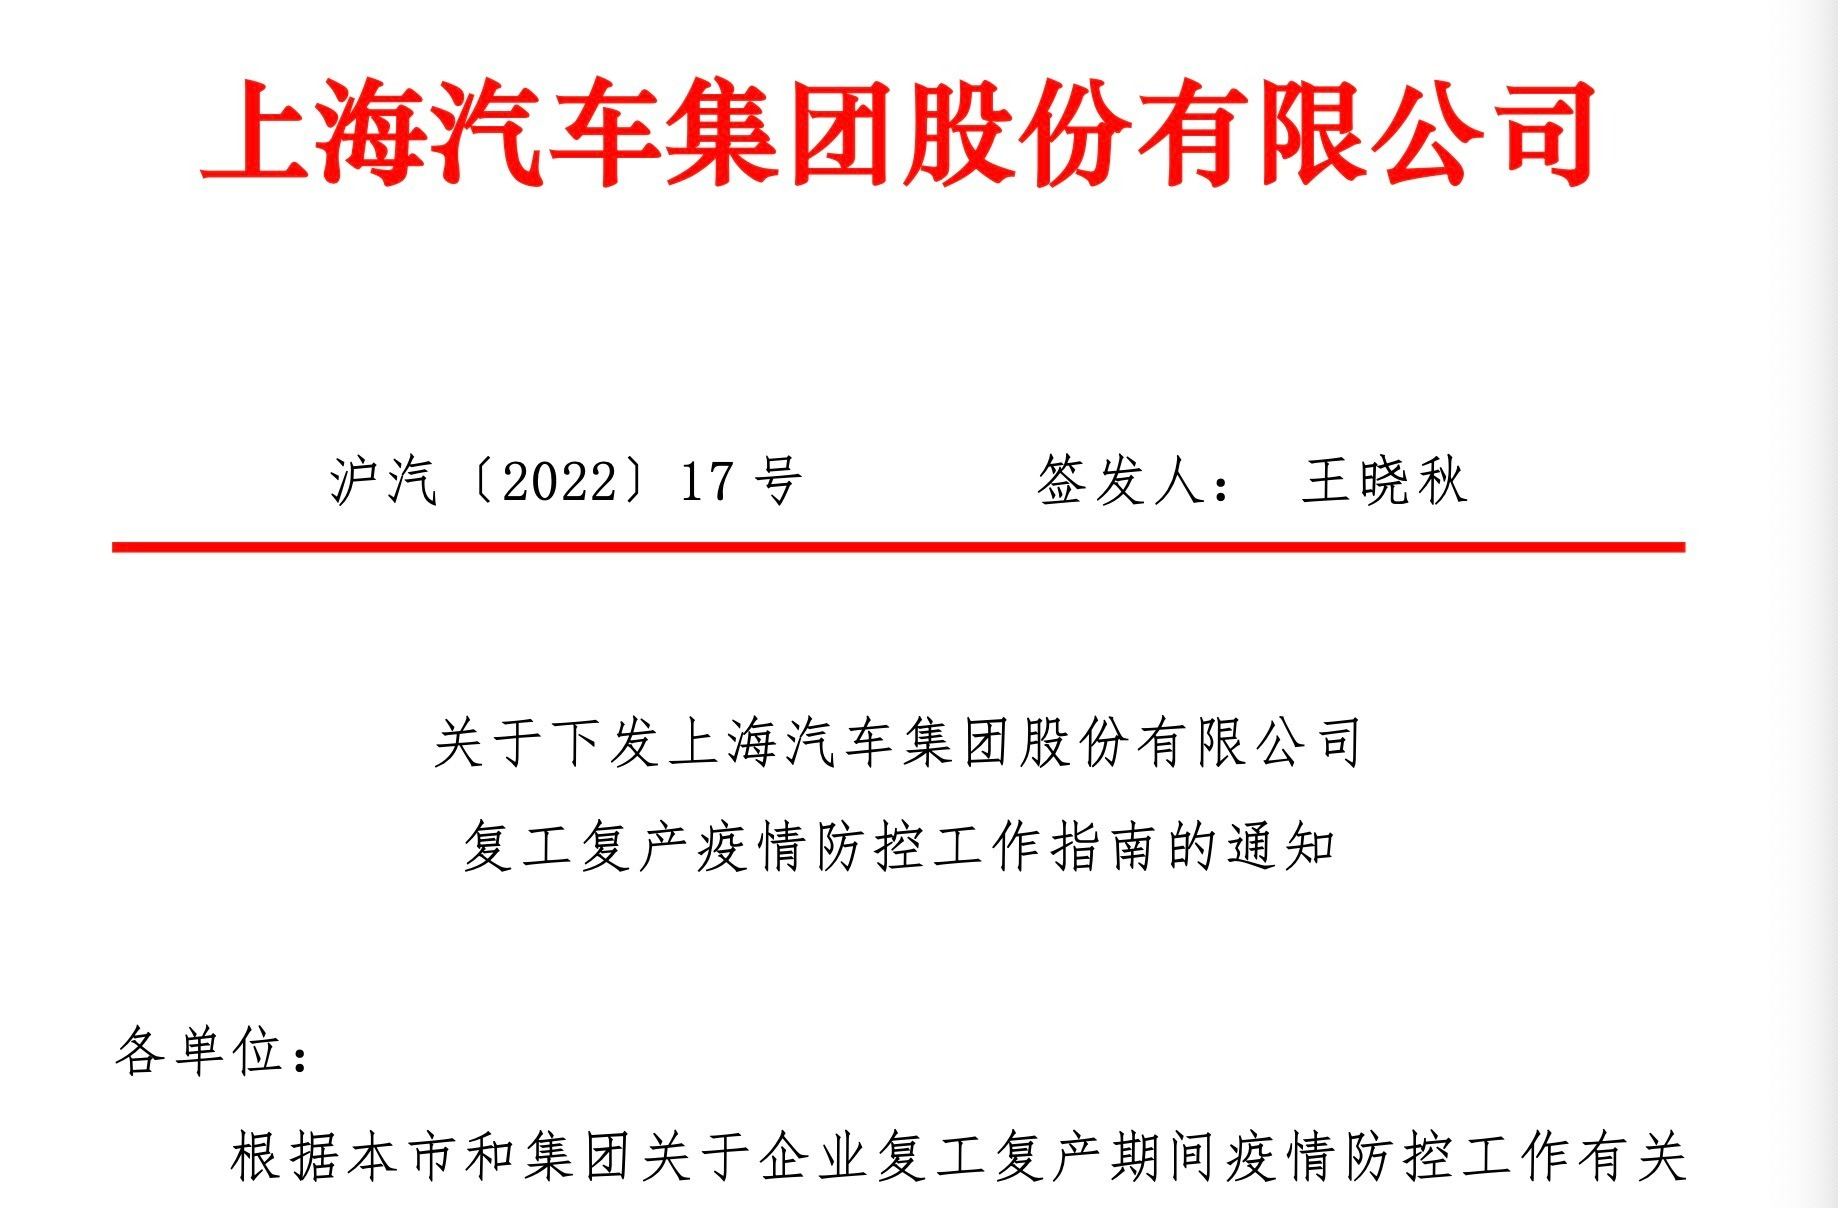 《关于下发上海汽车集团股份有限公司复工复产疫情防控工作指南的通知》